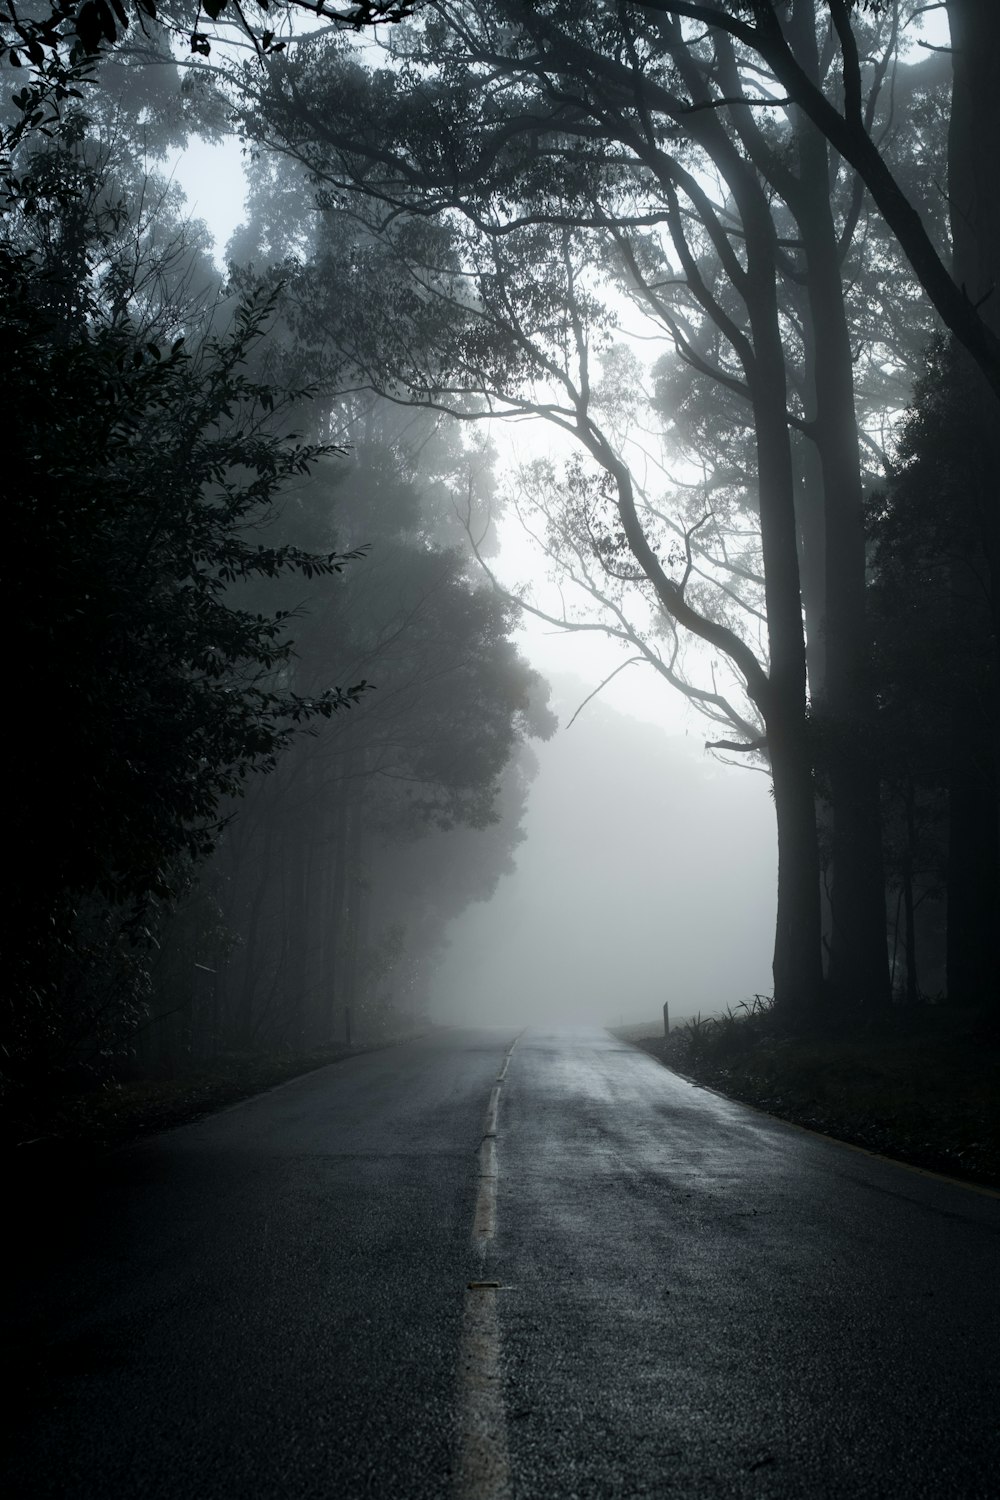 strada grigia tra gli alberi in fotografia in scala di grigi